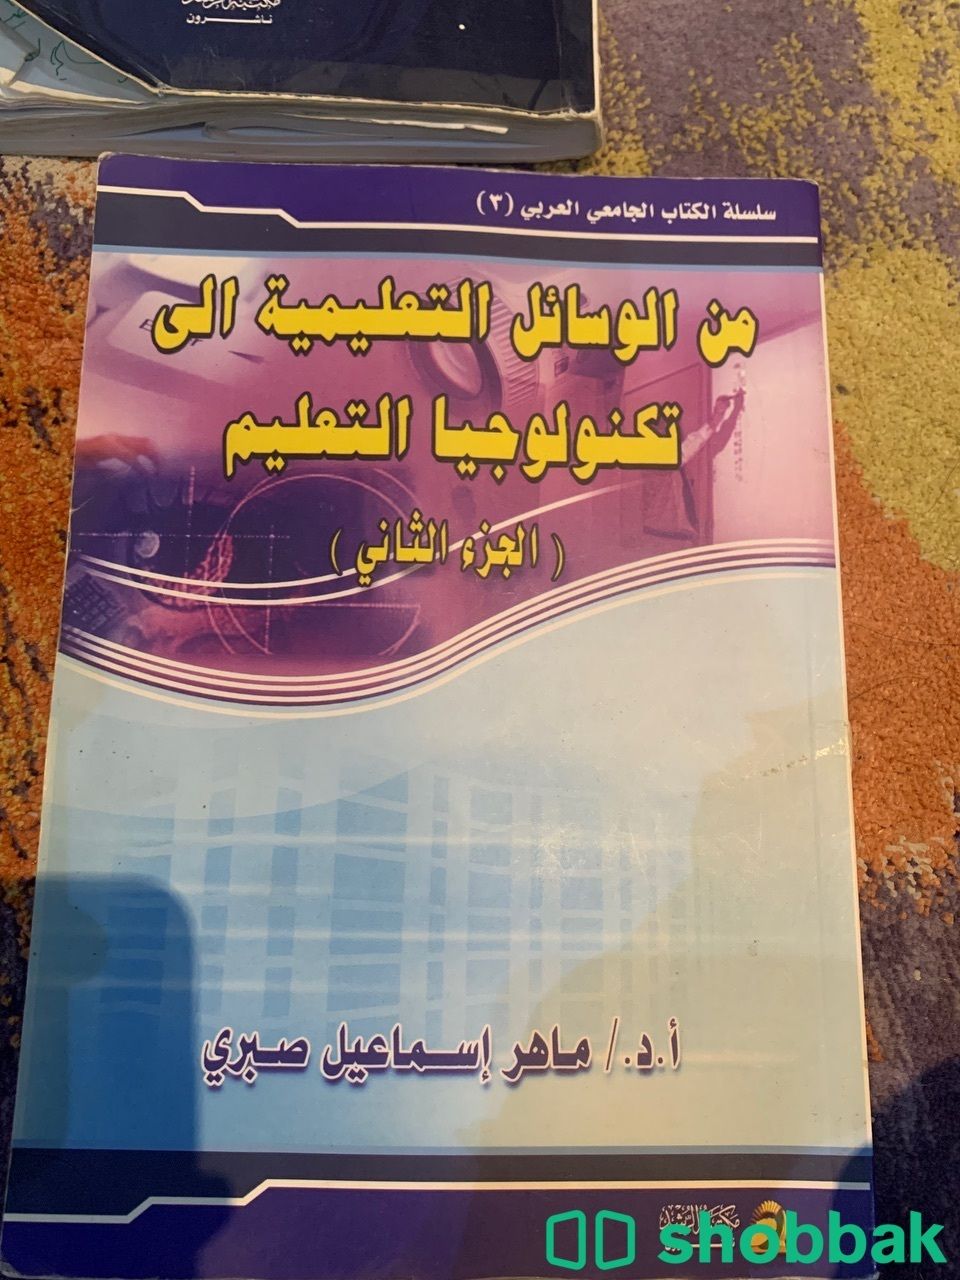 بيع كتب مستعملة شباك السعودية